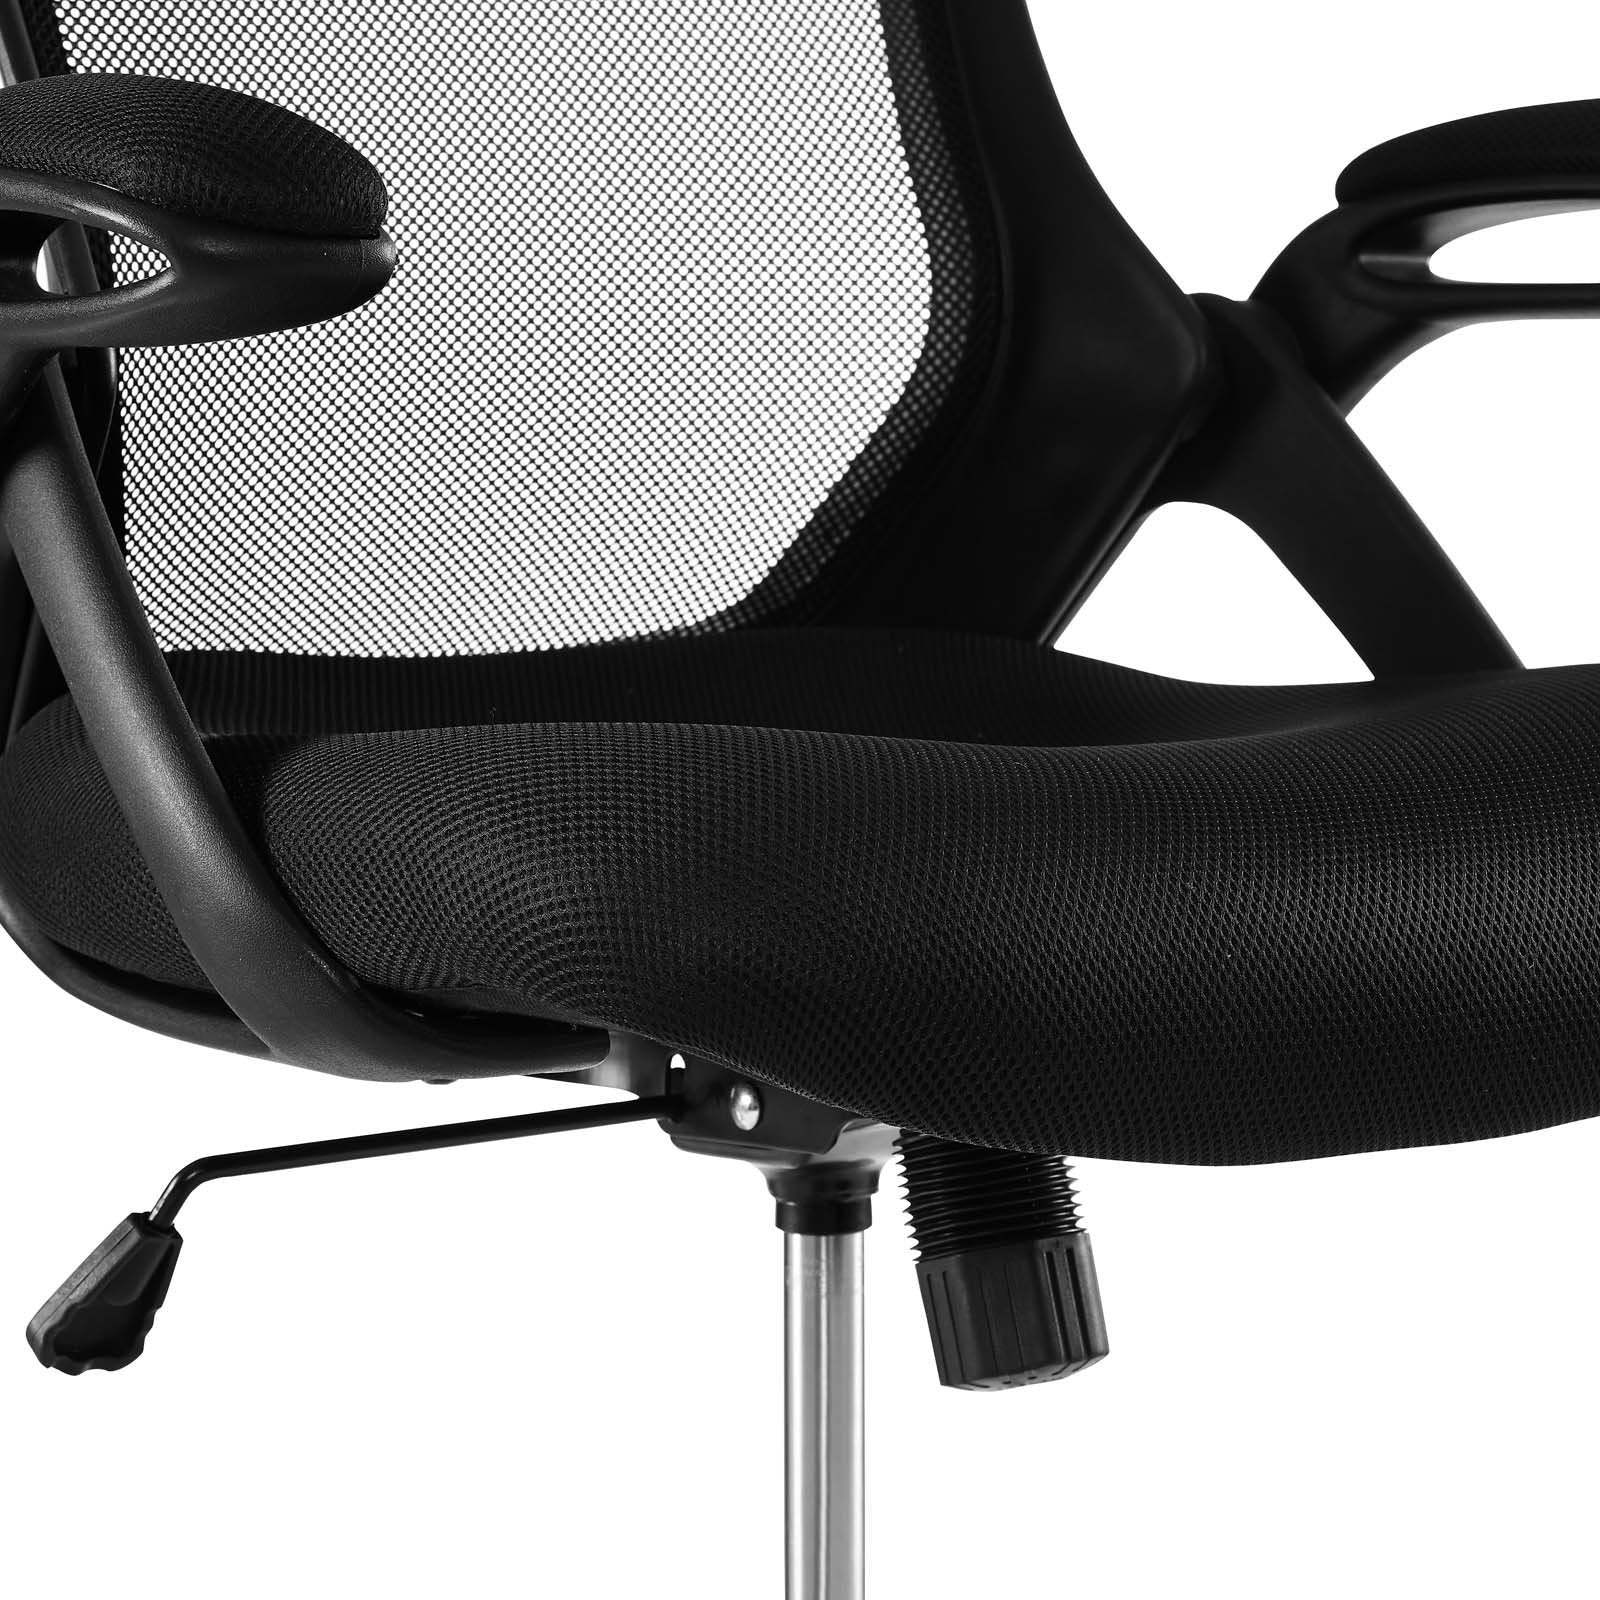 Modway Furniture Modern Assert Mesh Drafting Chair - EEI-3190